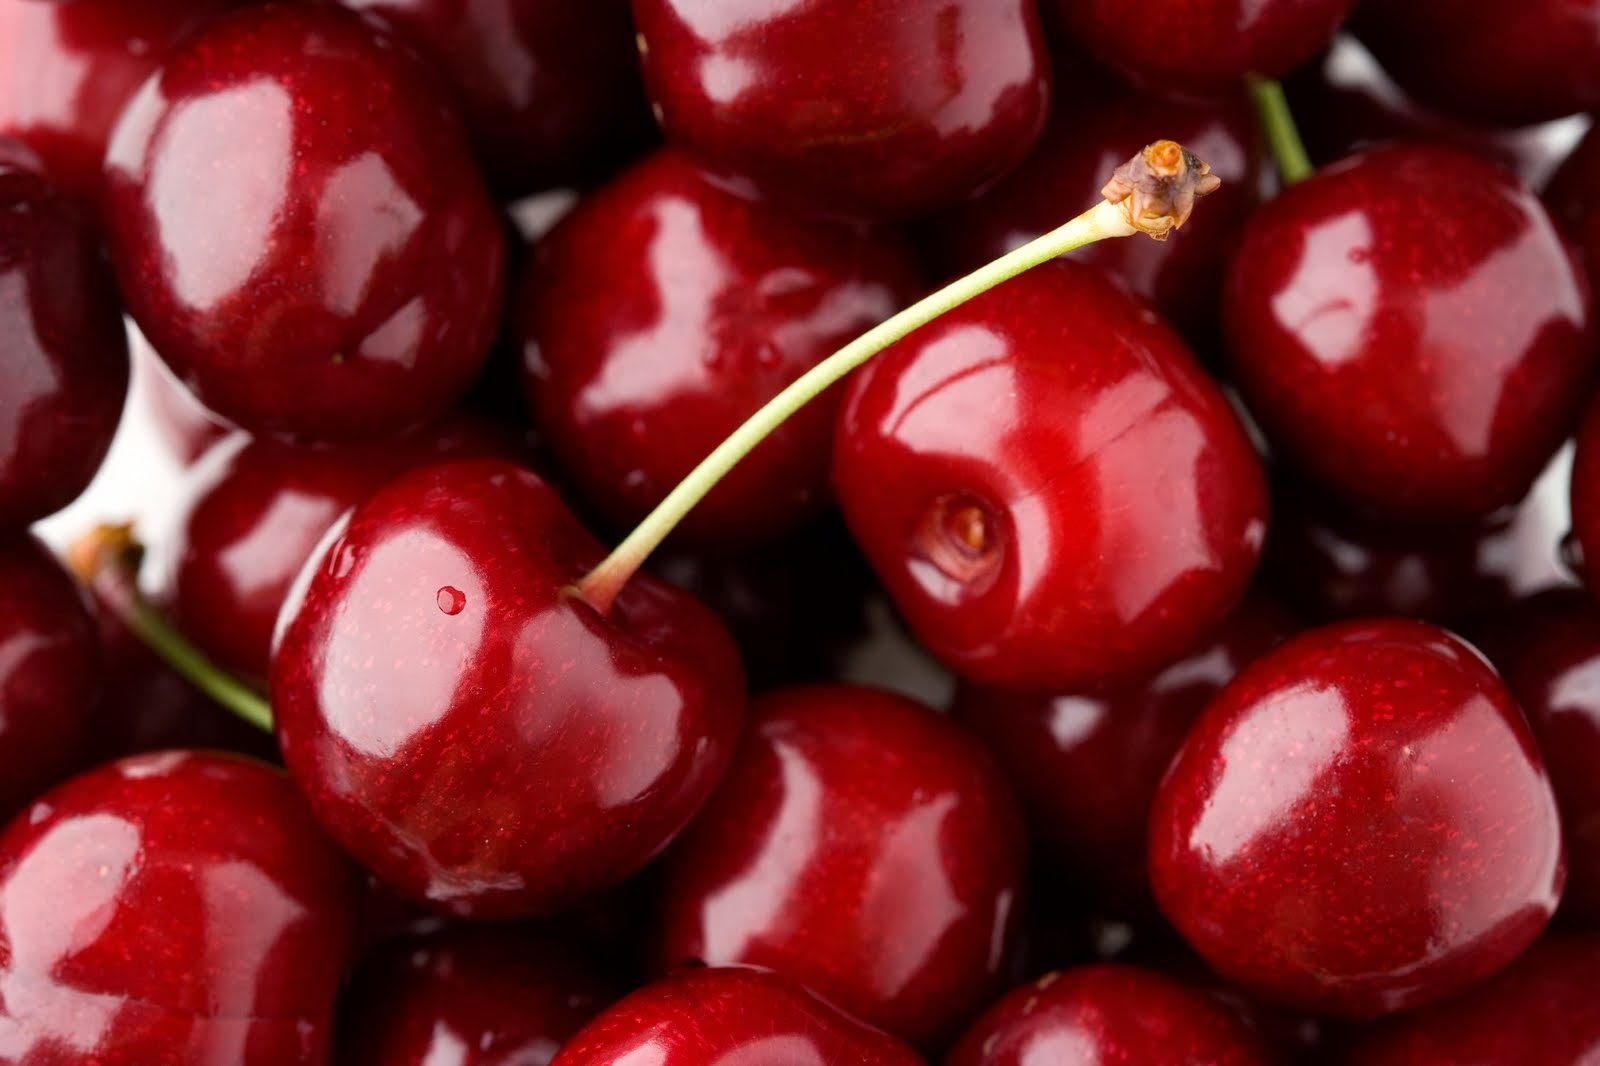 QlinArt Frozen Cherries Are Cool Summer Treats